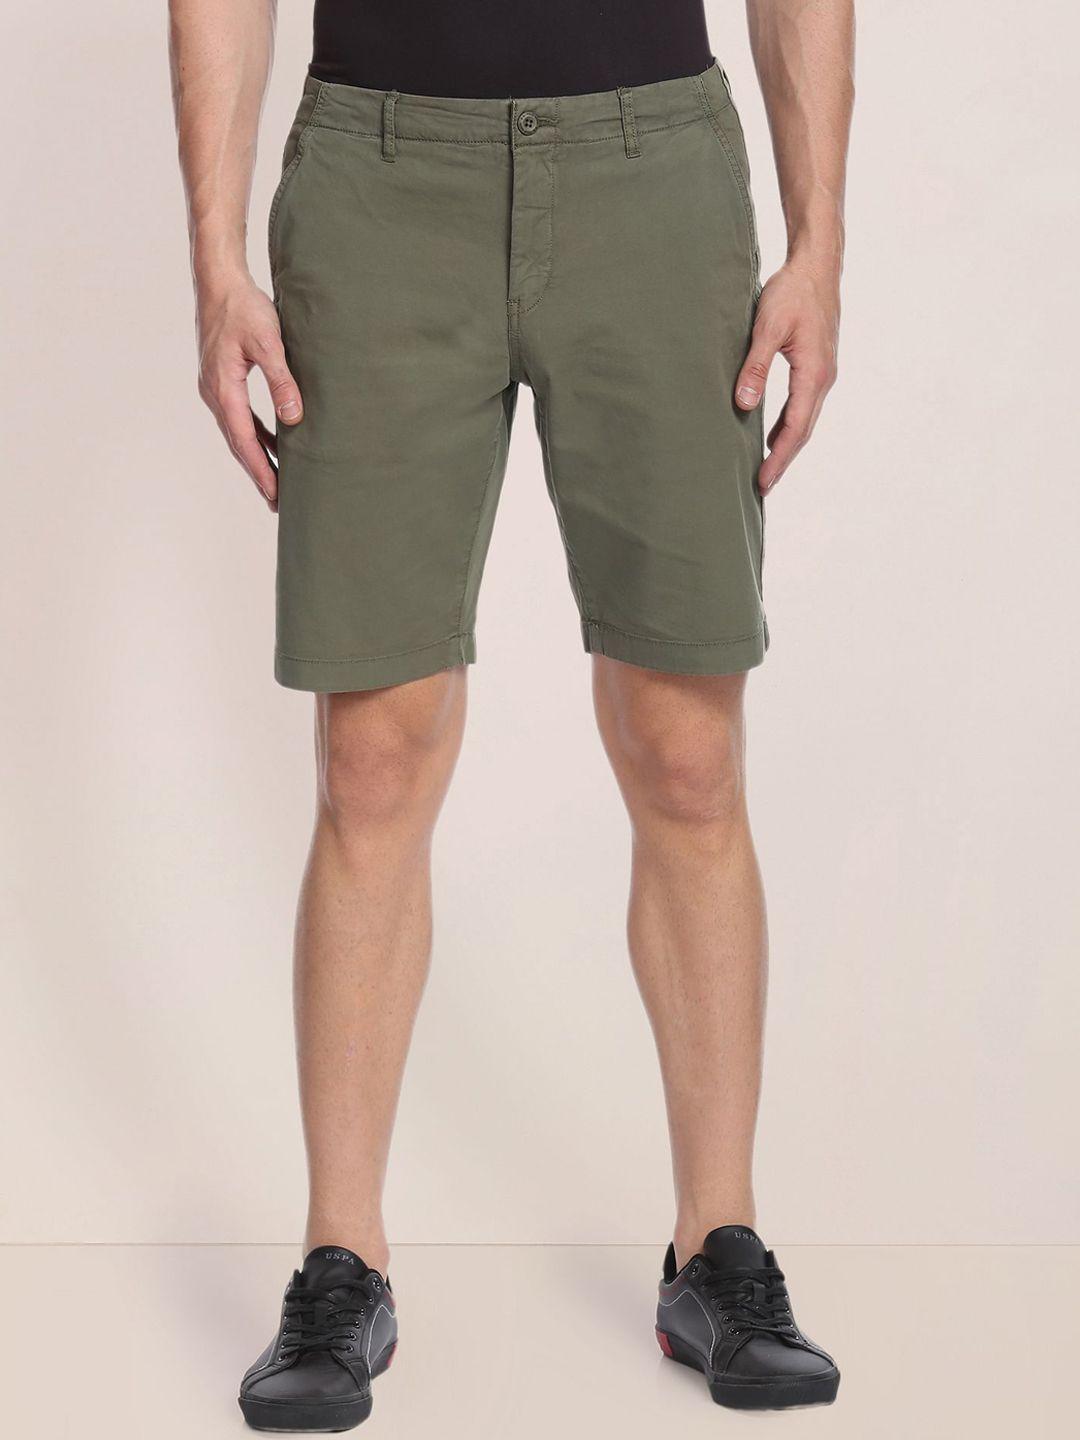 u.s. polo assn. men mid rise cotton slim fit shorts